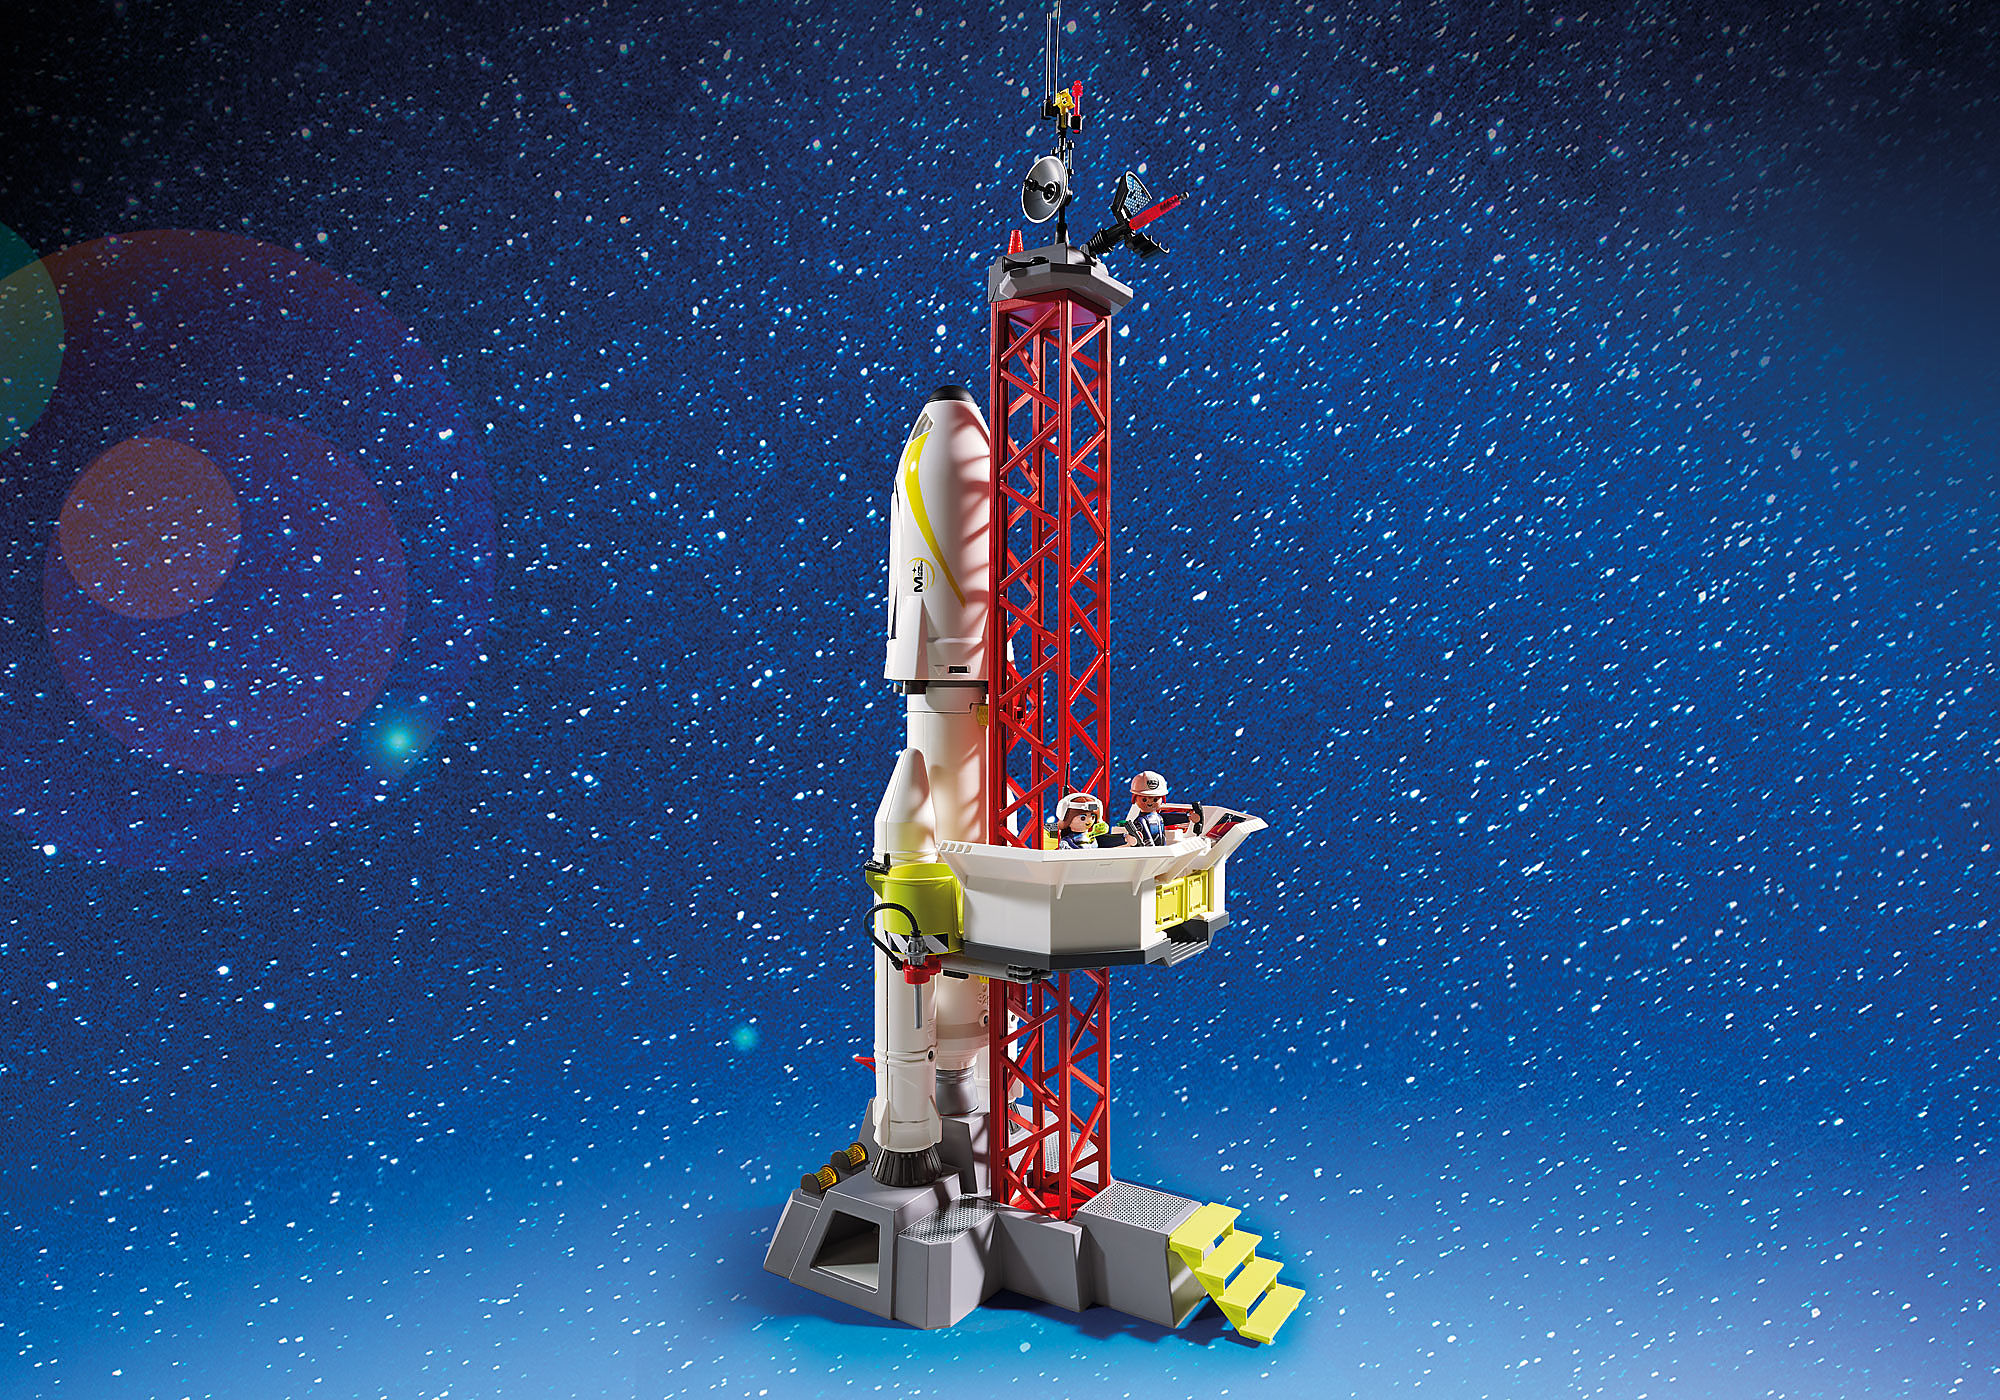 Playmobil Space Fusée Mars et Plateform de Lancement 9488 Espace, lumineux  + son